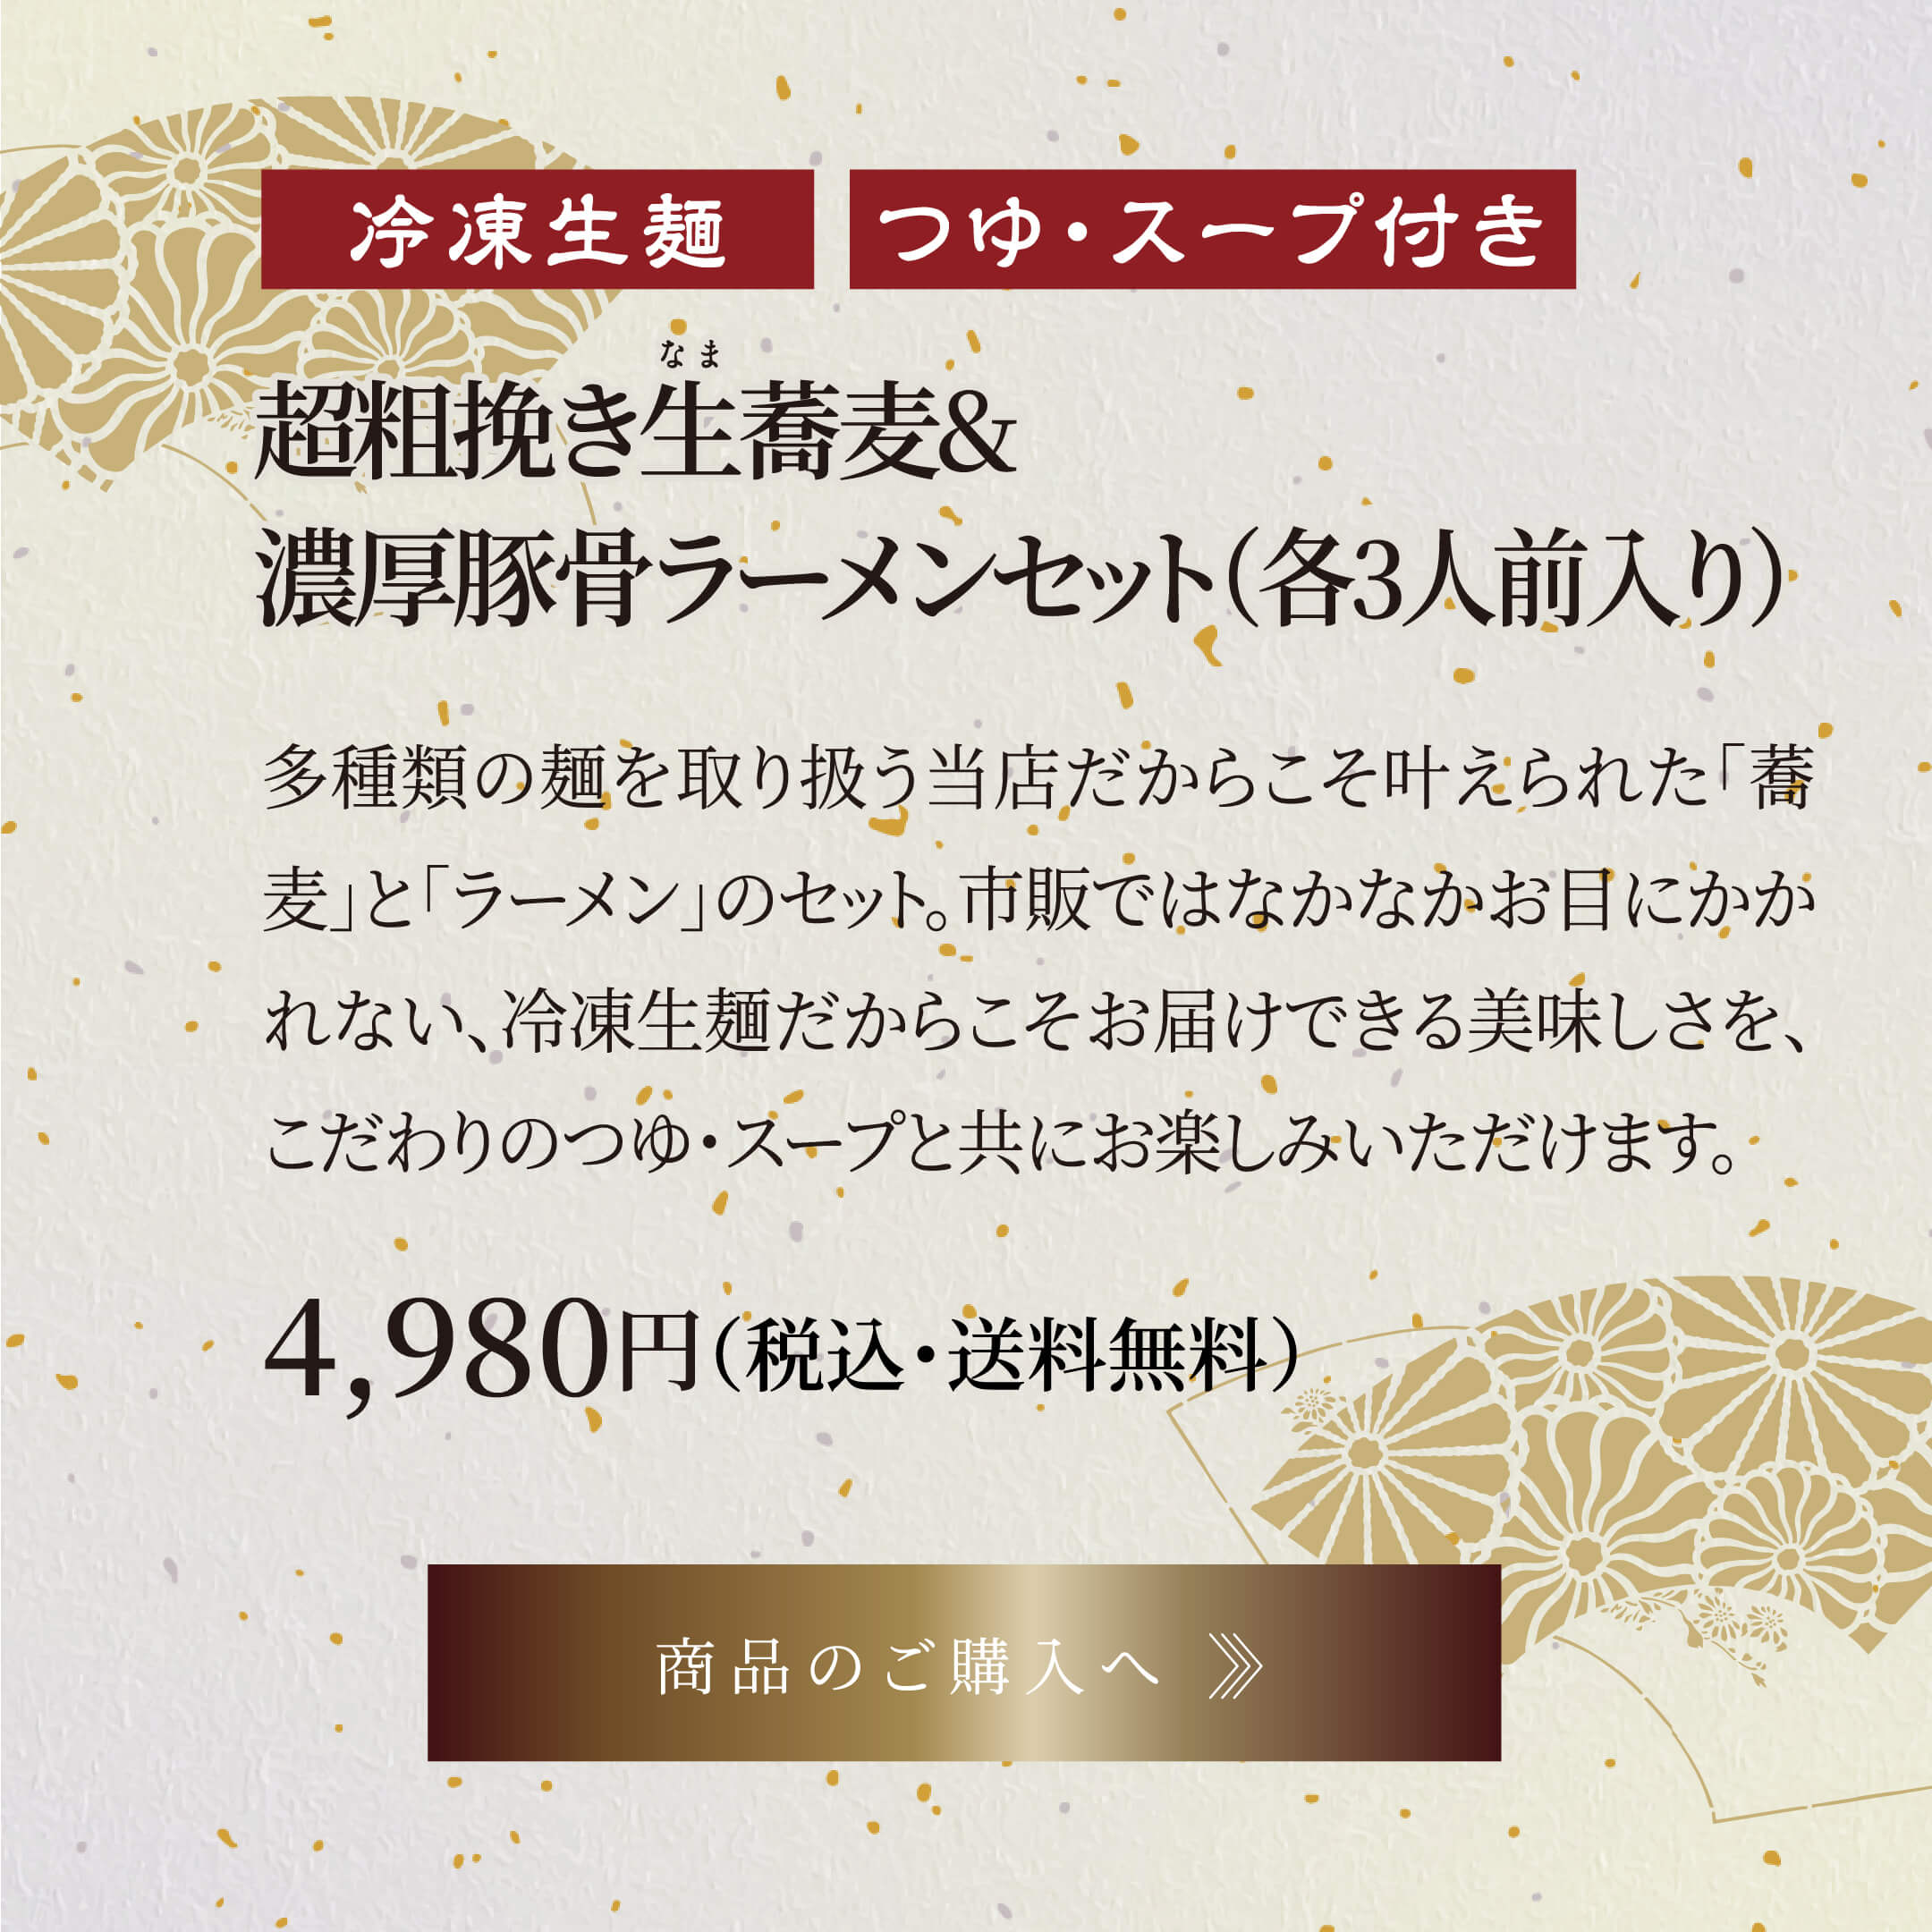 国産八割生蕎麦 つゆセット(各6人前入り) 5,980円円(税込・送料別)